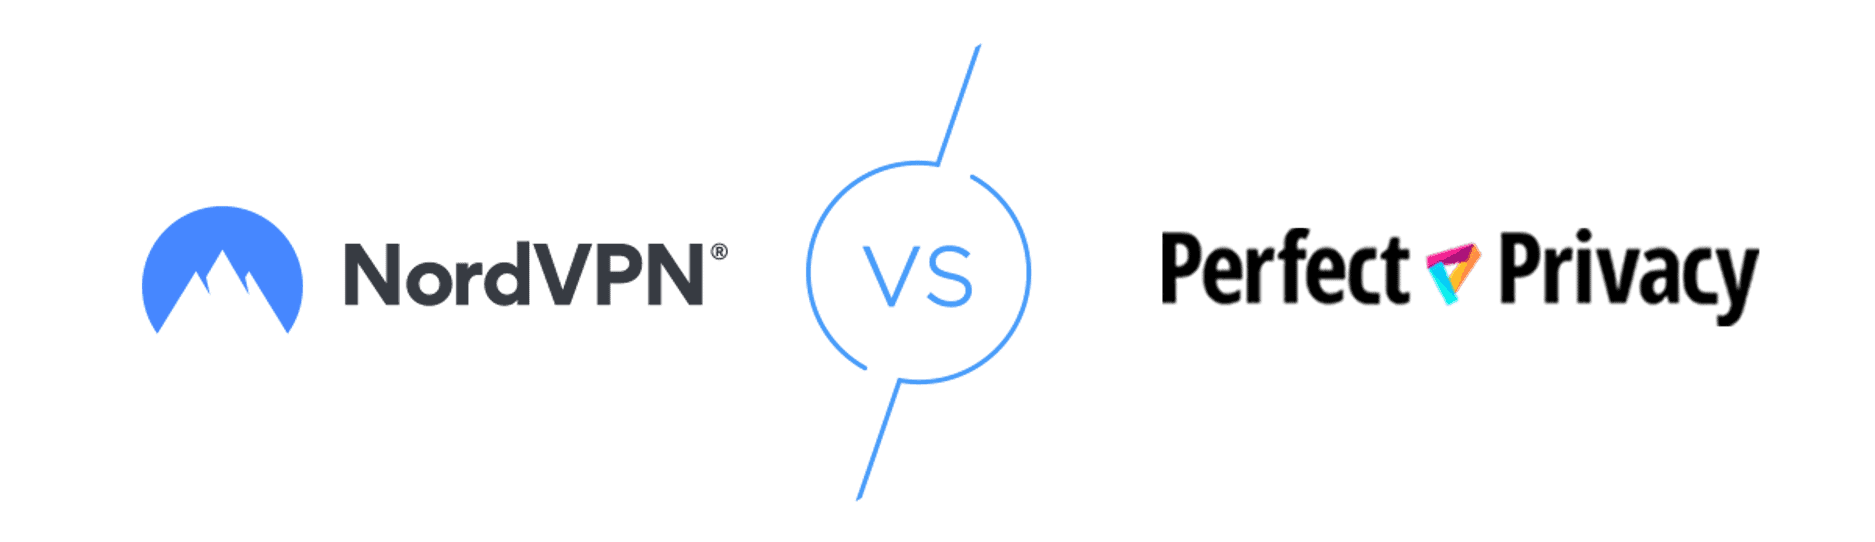 NordVPN vs. Perfect Privacy